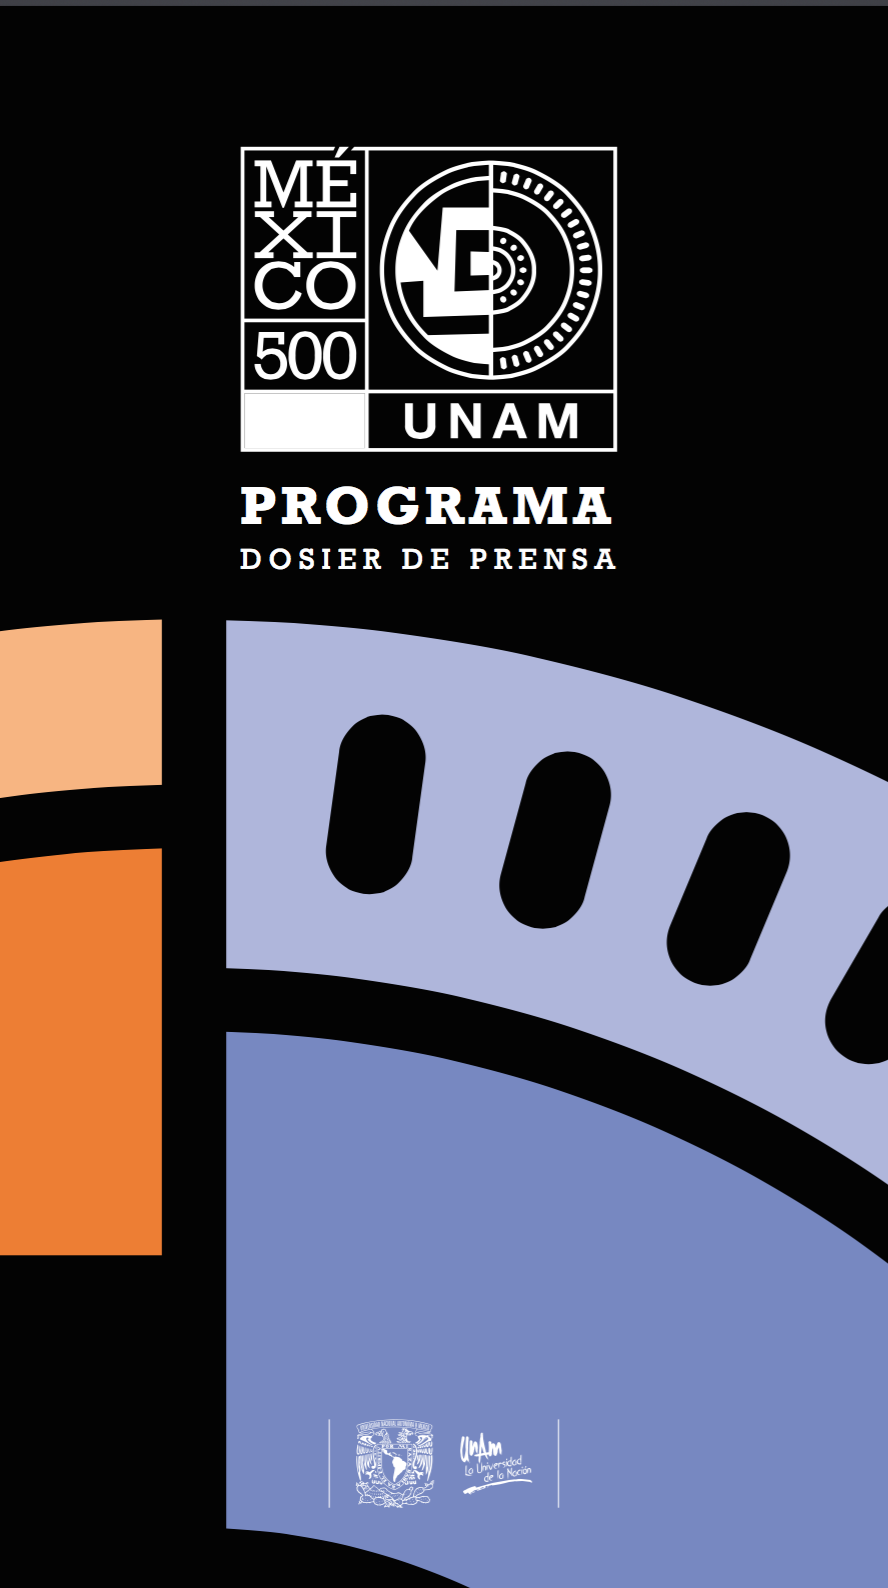 México 500, programa de la UNAM para conmemorar la caída de Tenochtitlan